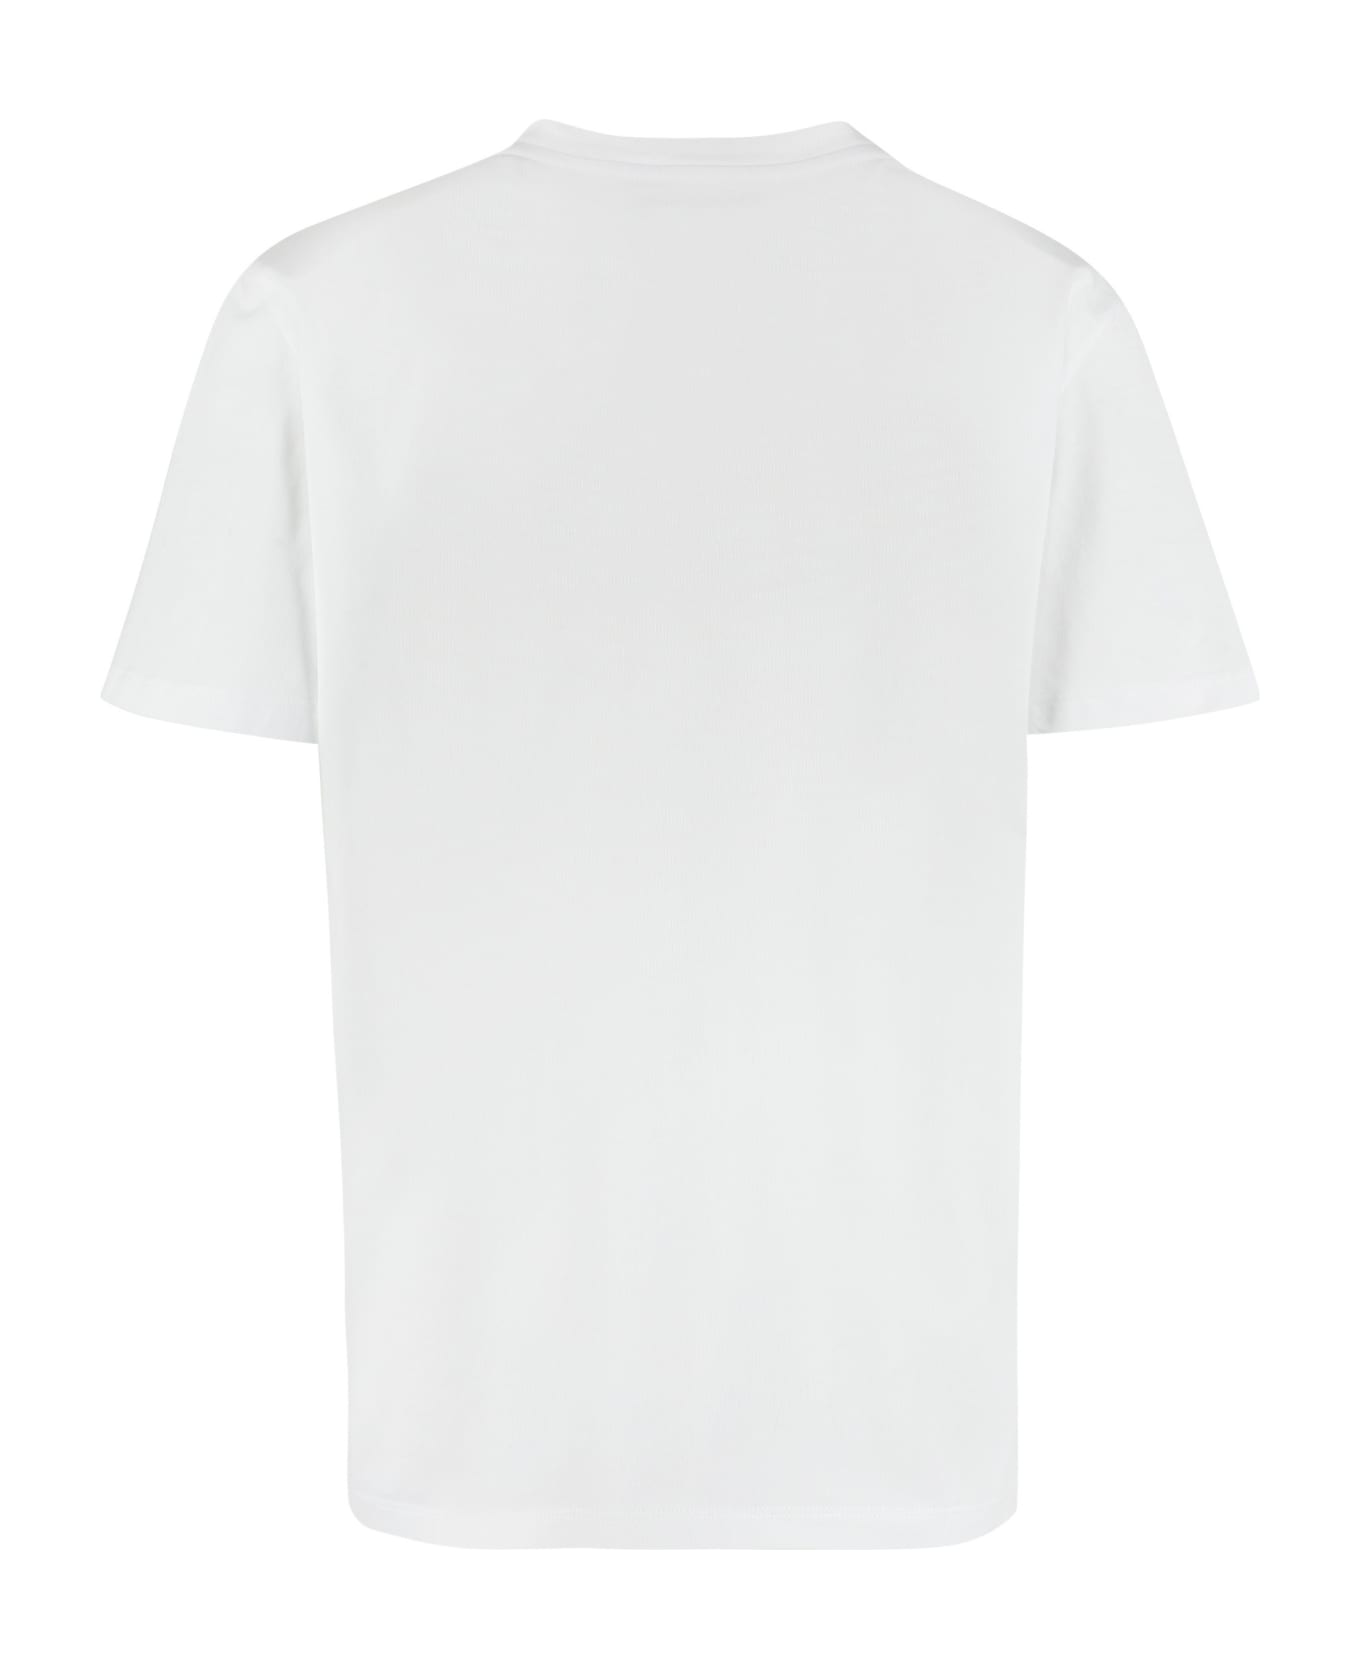 Golden Goose Star W's Regular T-shirt - White